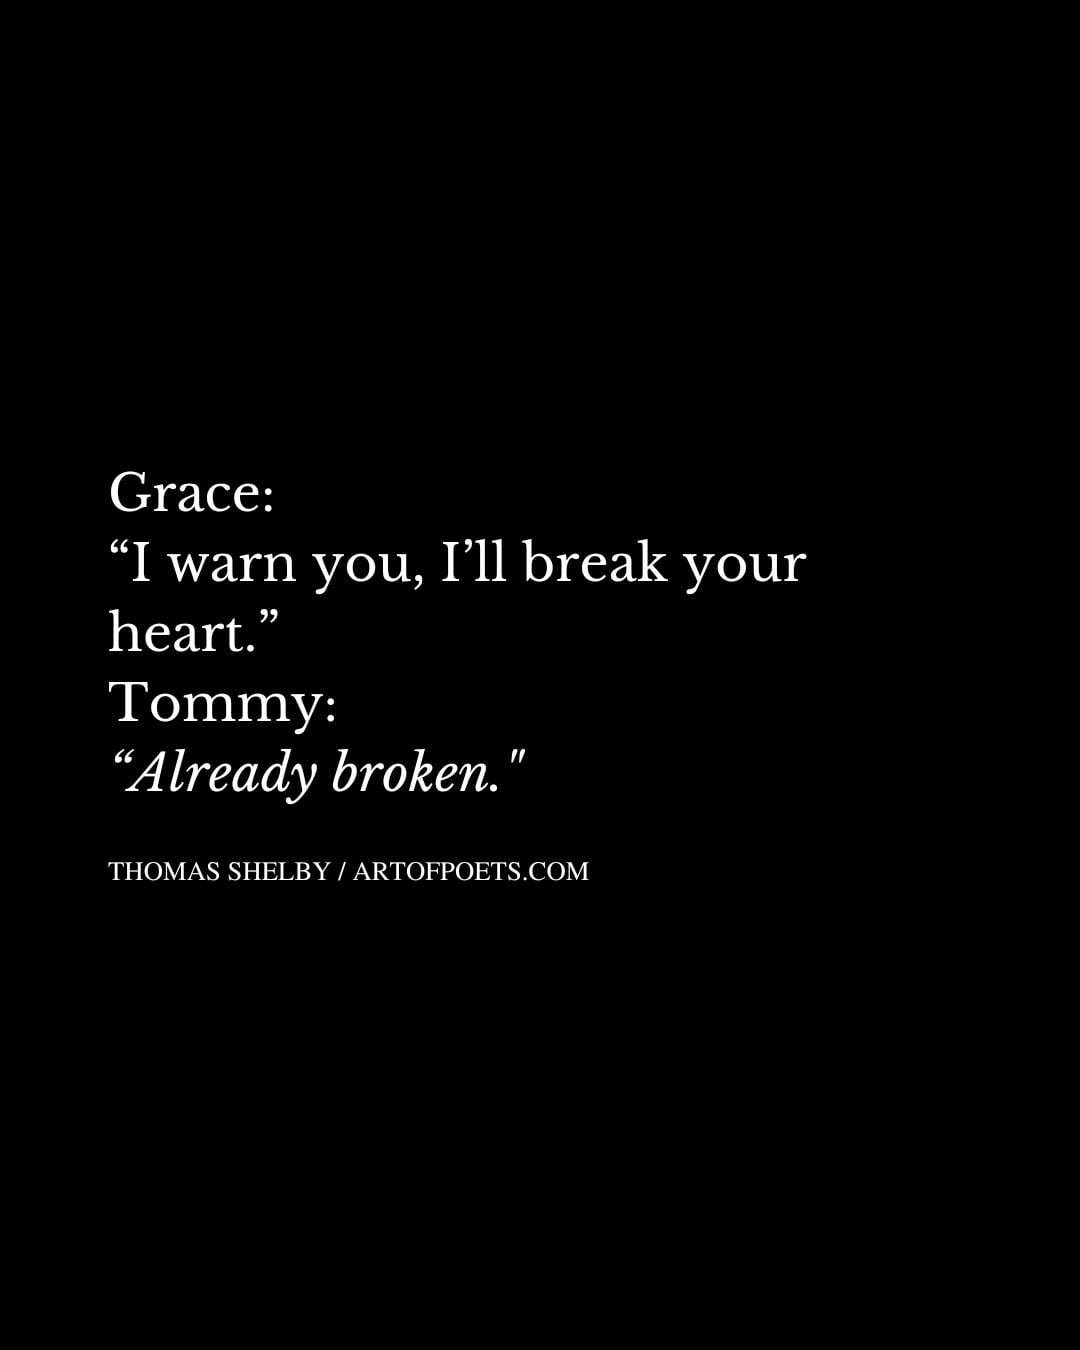 Grace I warn you Ill break your heart. Tommy Already broken